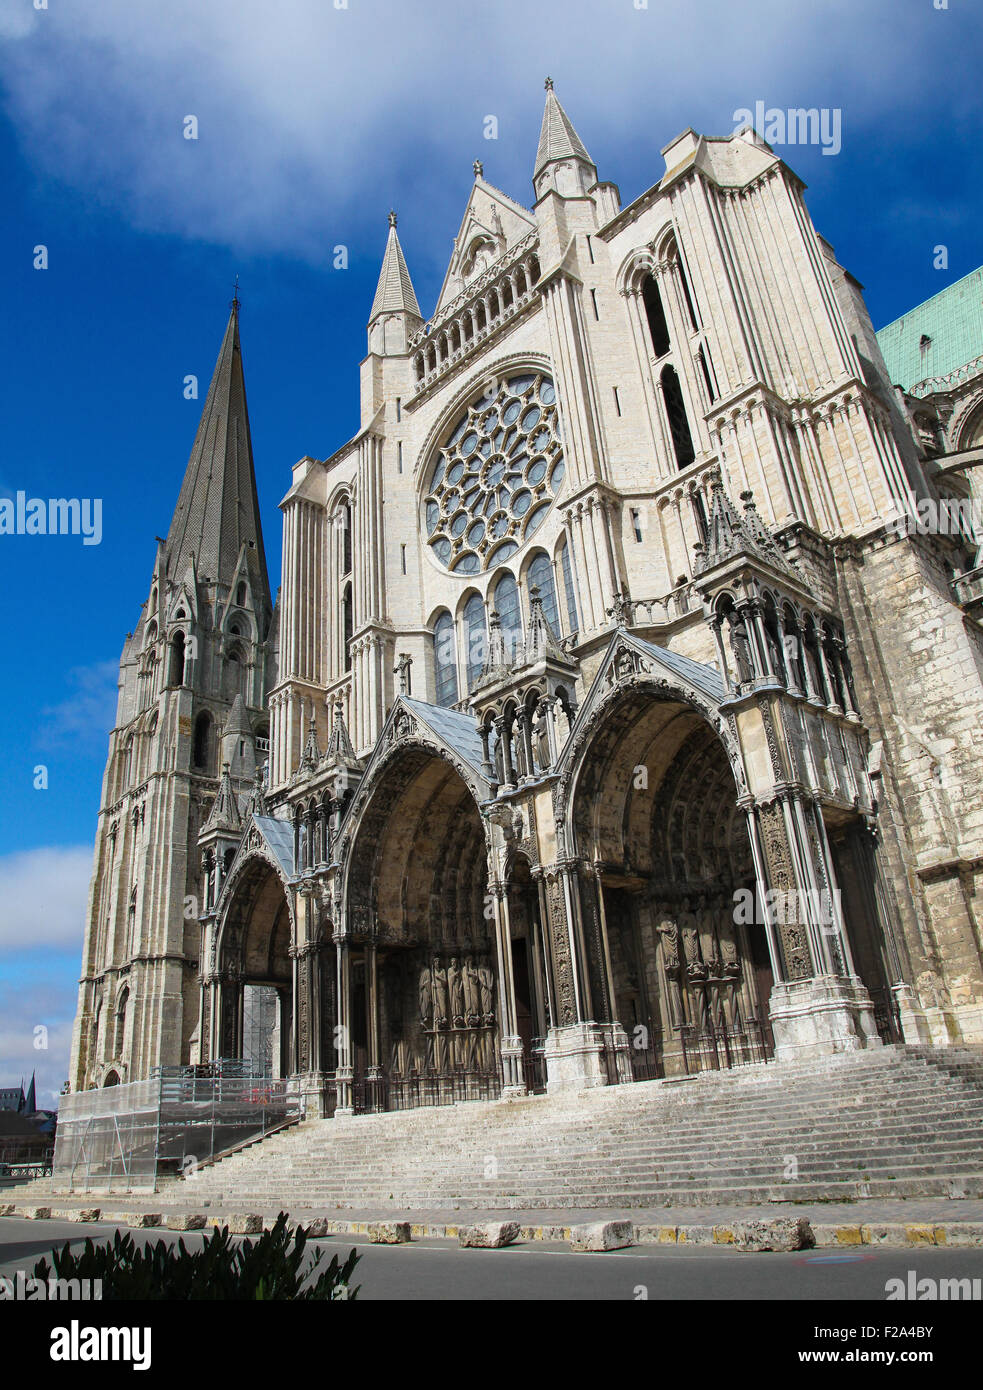 Cathédrale de Notre-Dame de Chartres, une cité médiévale cathédrale catholique de Chartres, en France, à environ 80 kilomètres au sud-ouest de Paris. Banque D'Images